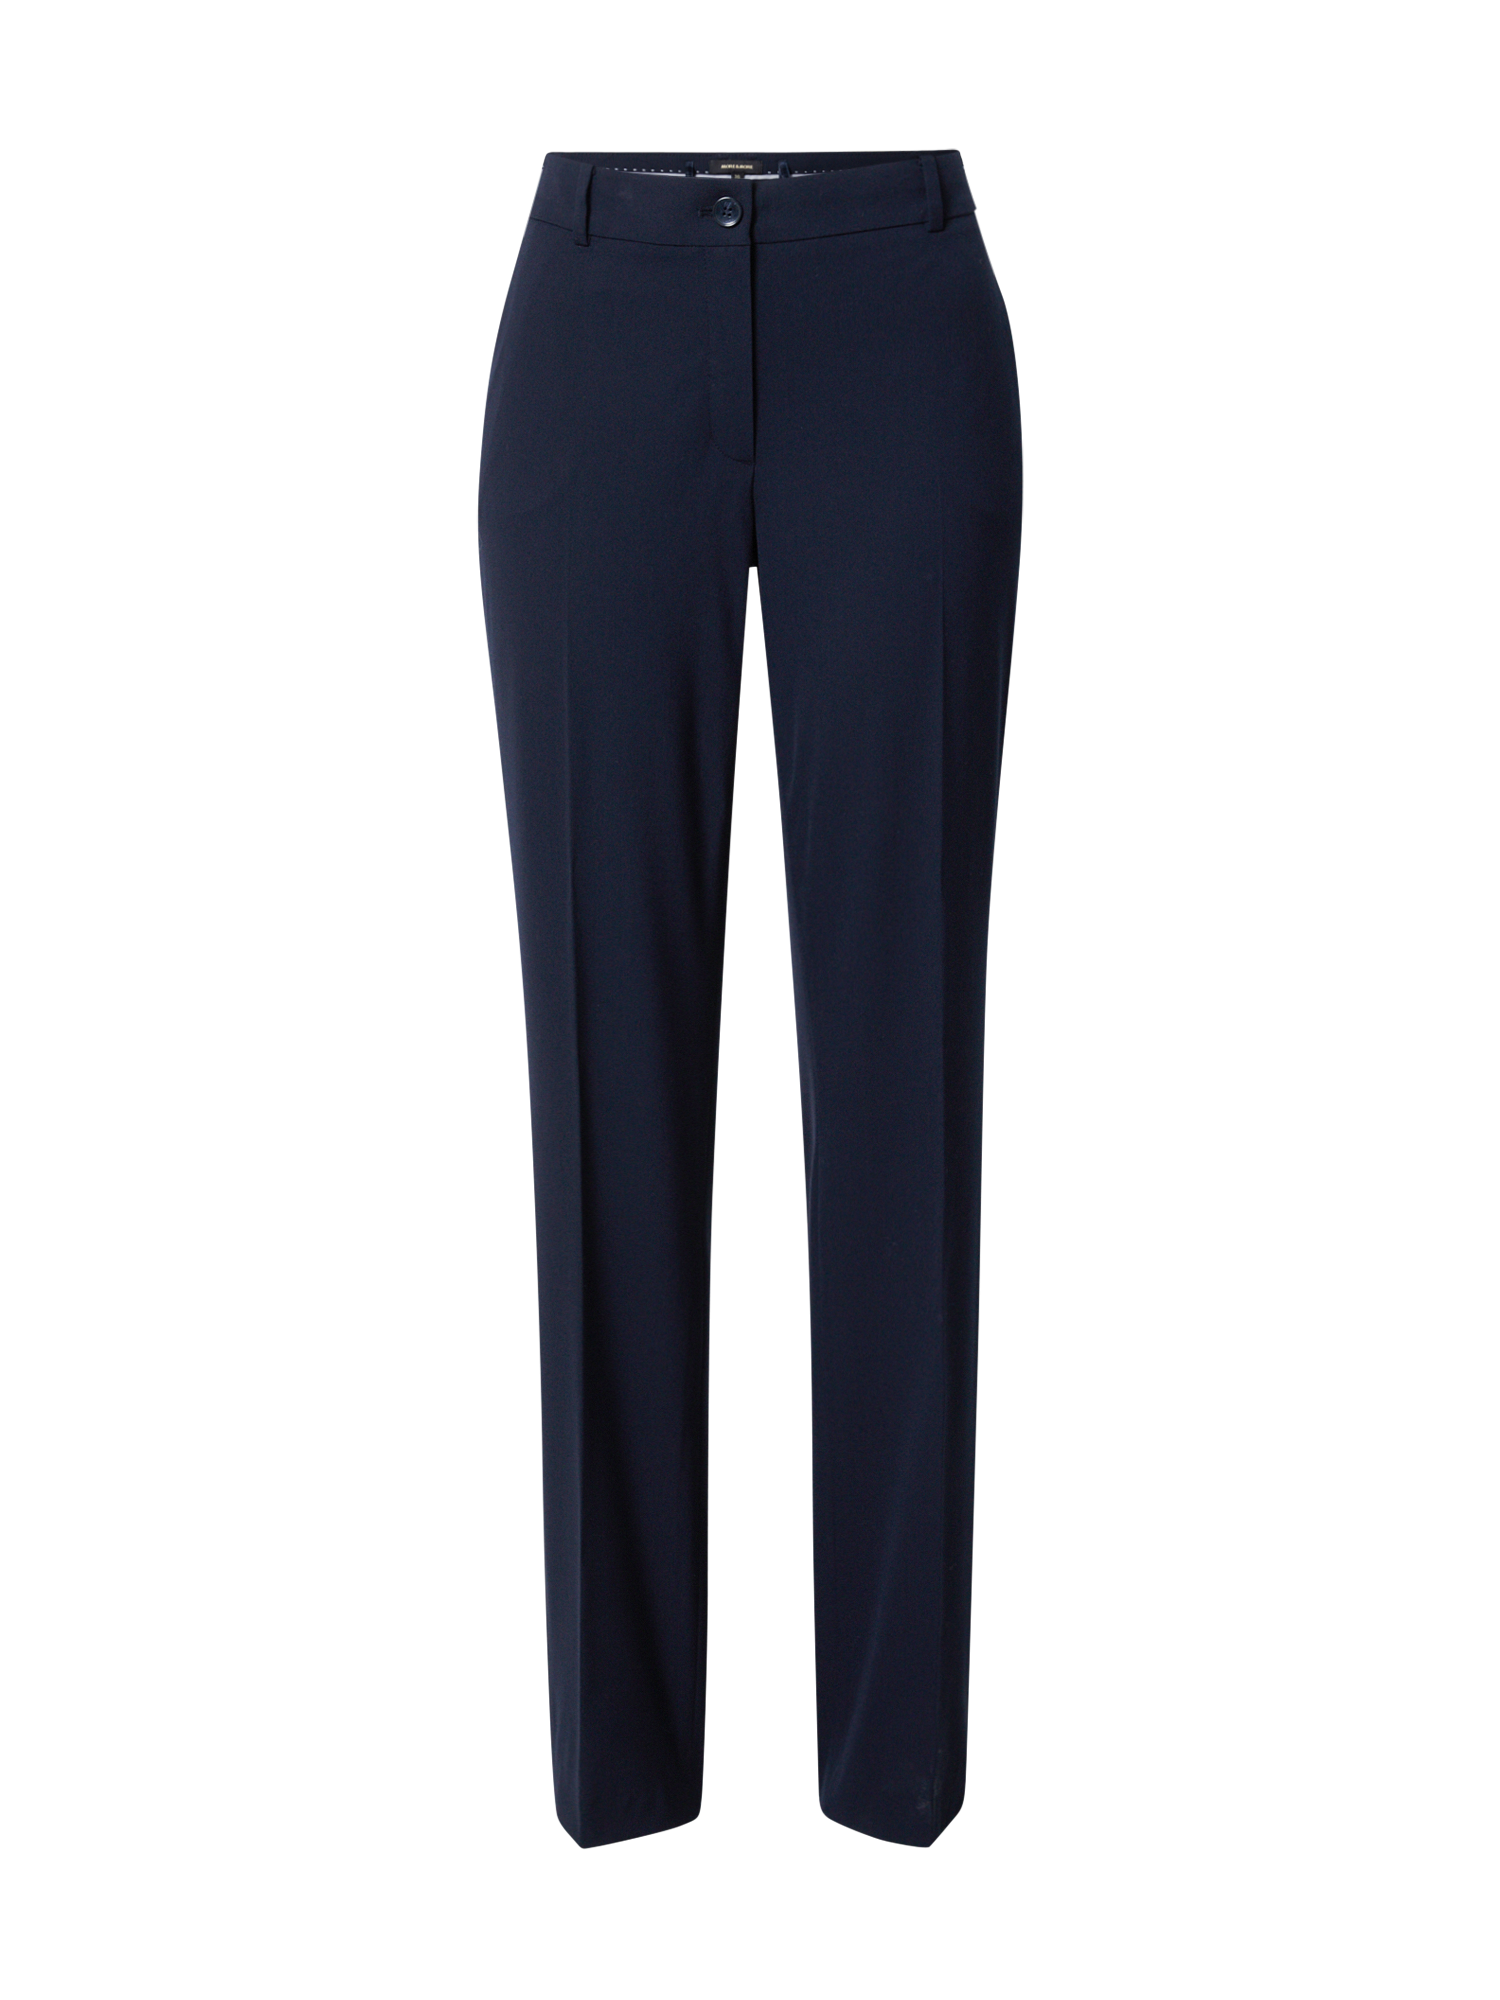 XGuVi Plus size MORE & MORE Spodnie w kant Hanna w kolorze Atramentowym 